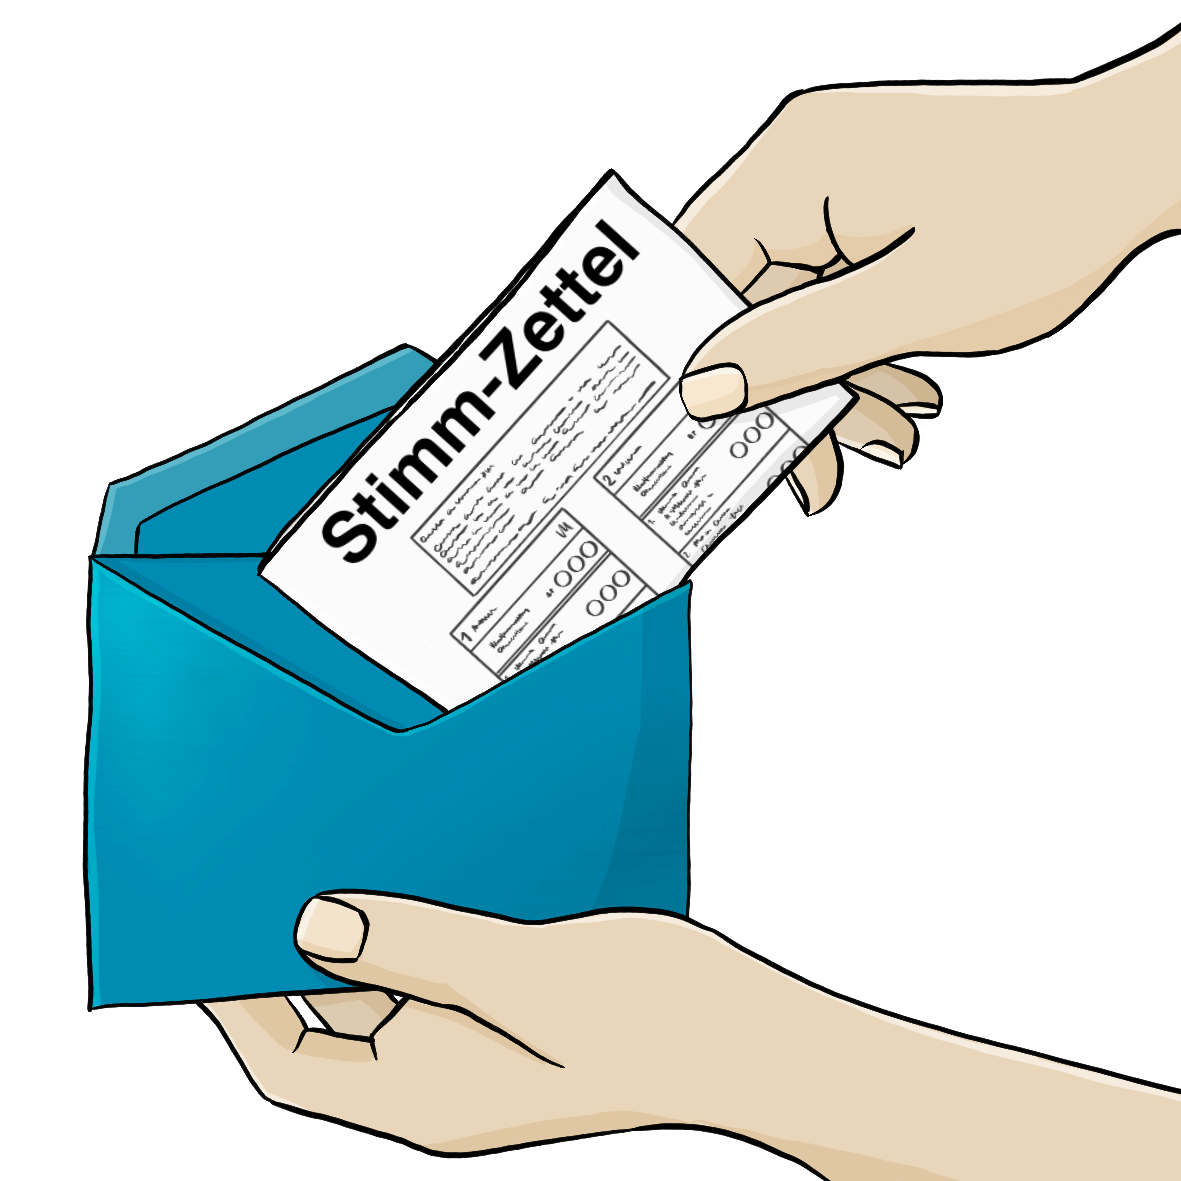 Eine Hand steckt einen Stimmzettel in einen blauen Briefumschlag.